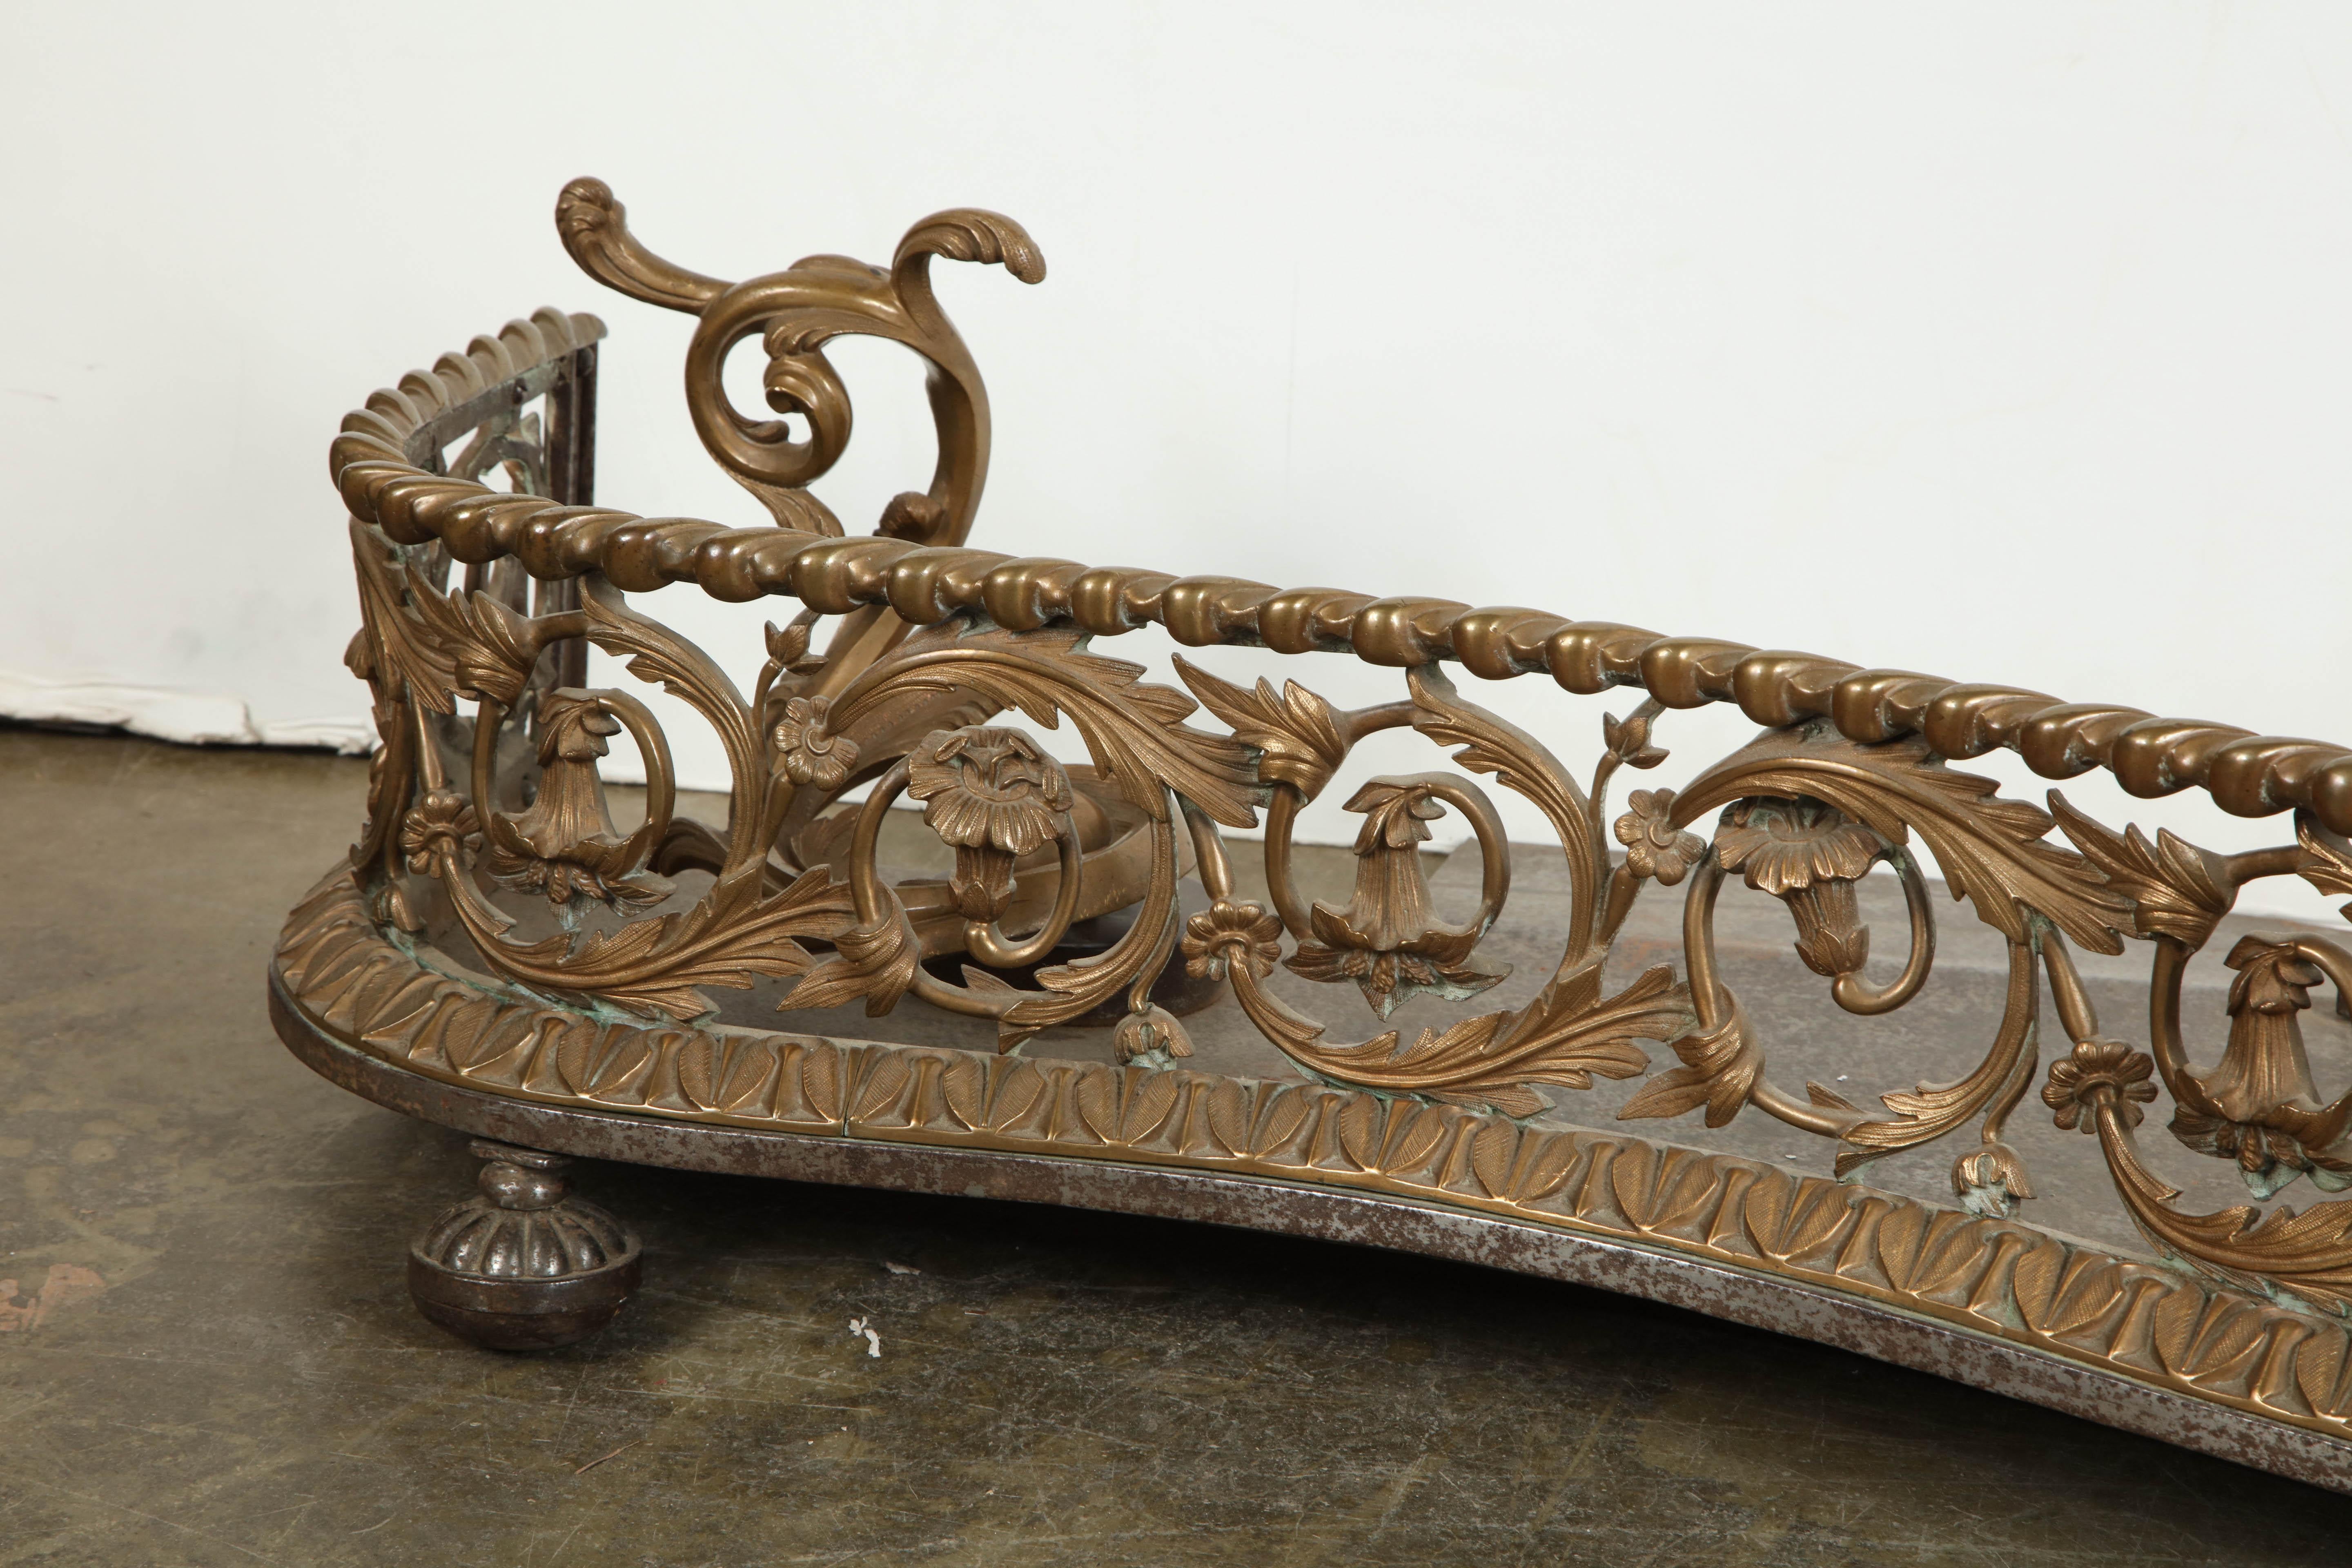 A fine English Rococo bronze openwork serpentine form fireplace fender.